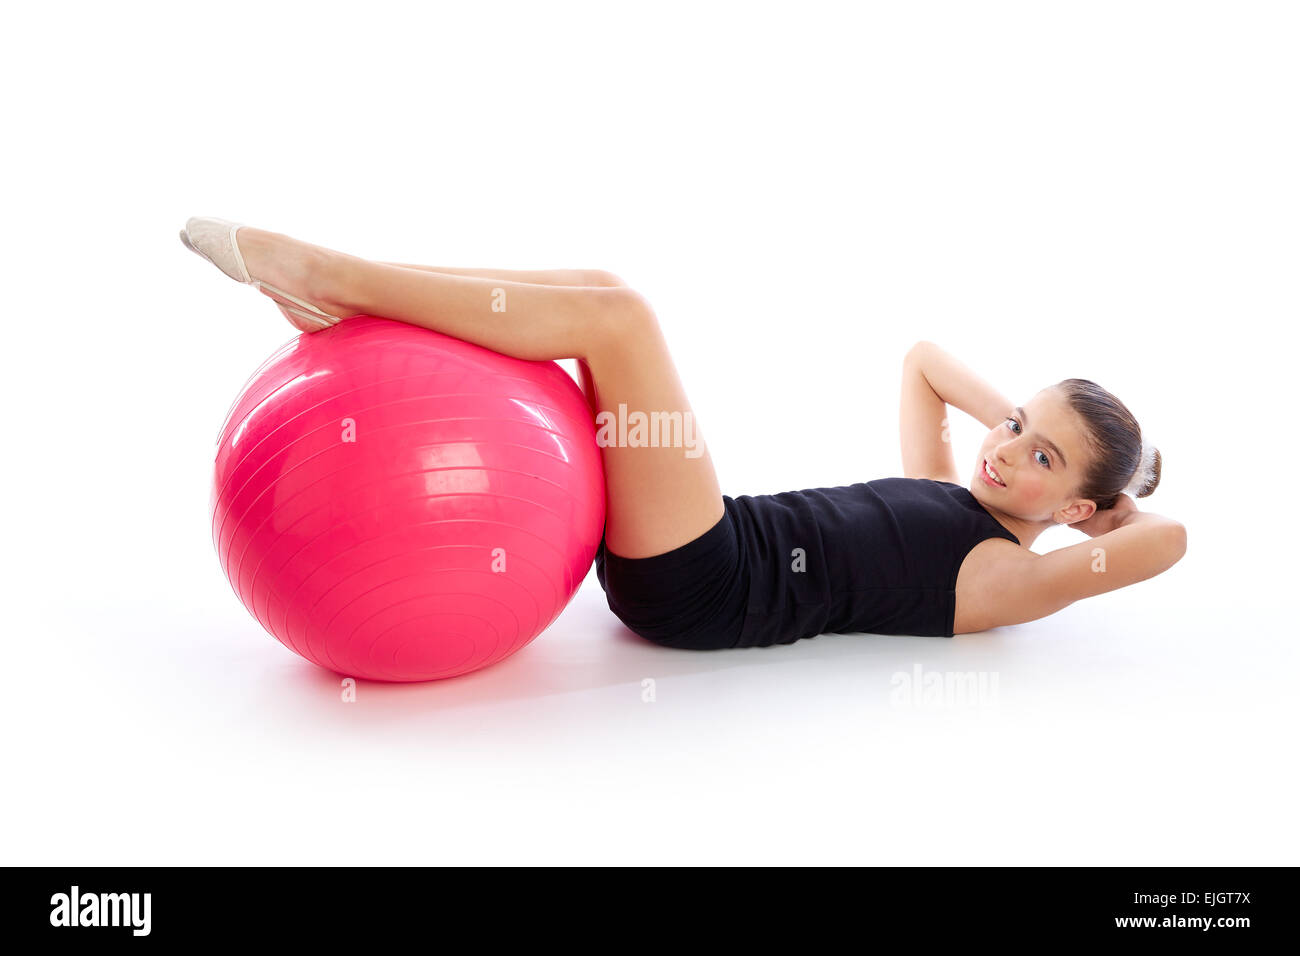 Fitball Fitness swiss ball kid girl esercizio allenamento su sfondo bianco Foto Stock